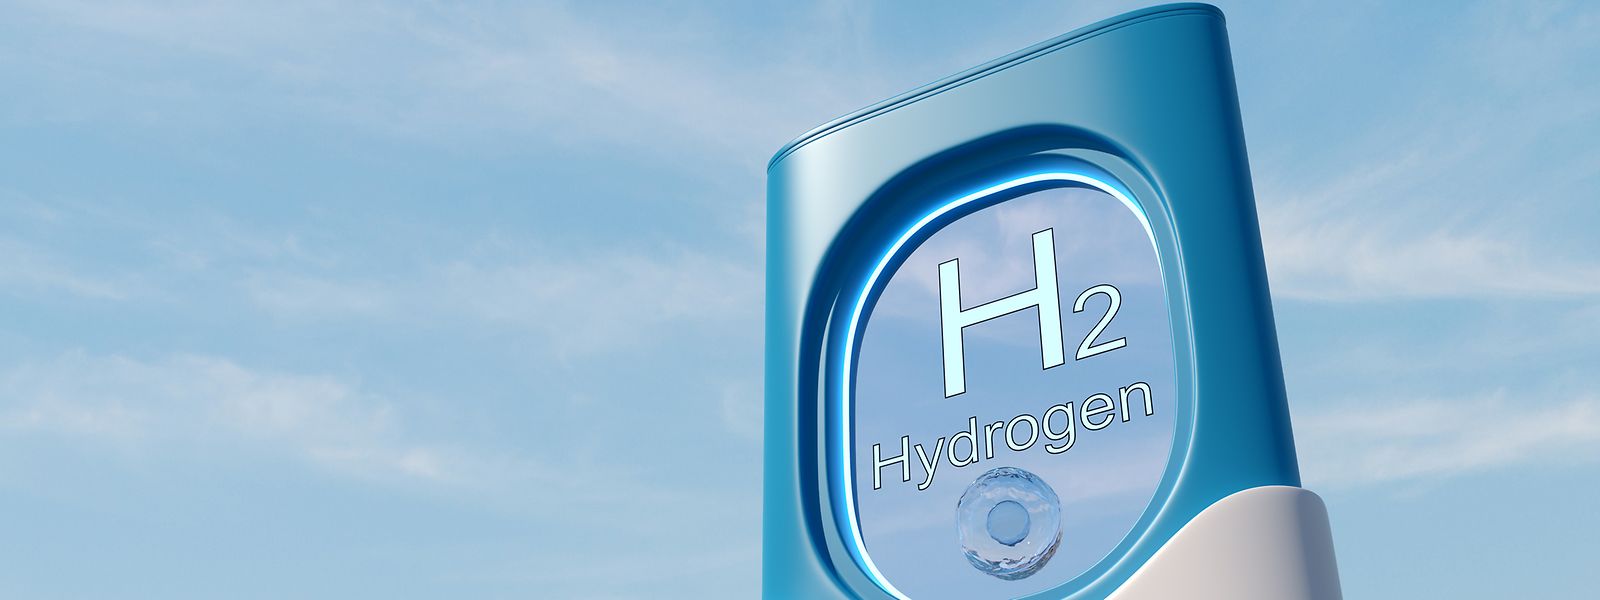 Wasserstoff spielt eine wichtige Rolle bei der Erreichung der Klimaziele in der EU.